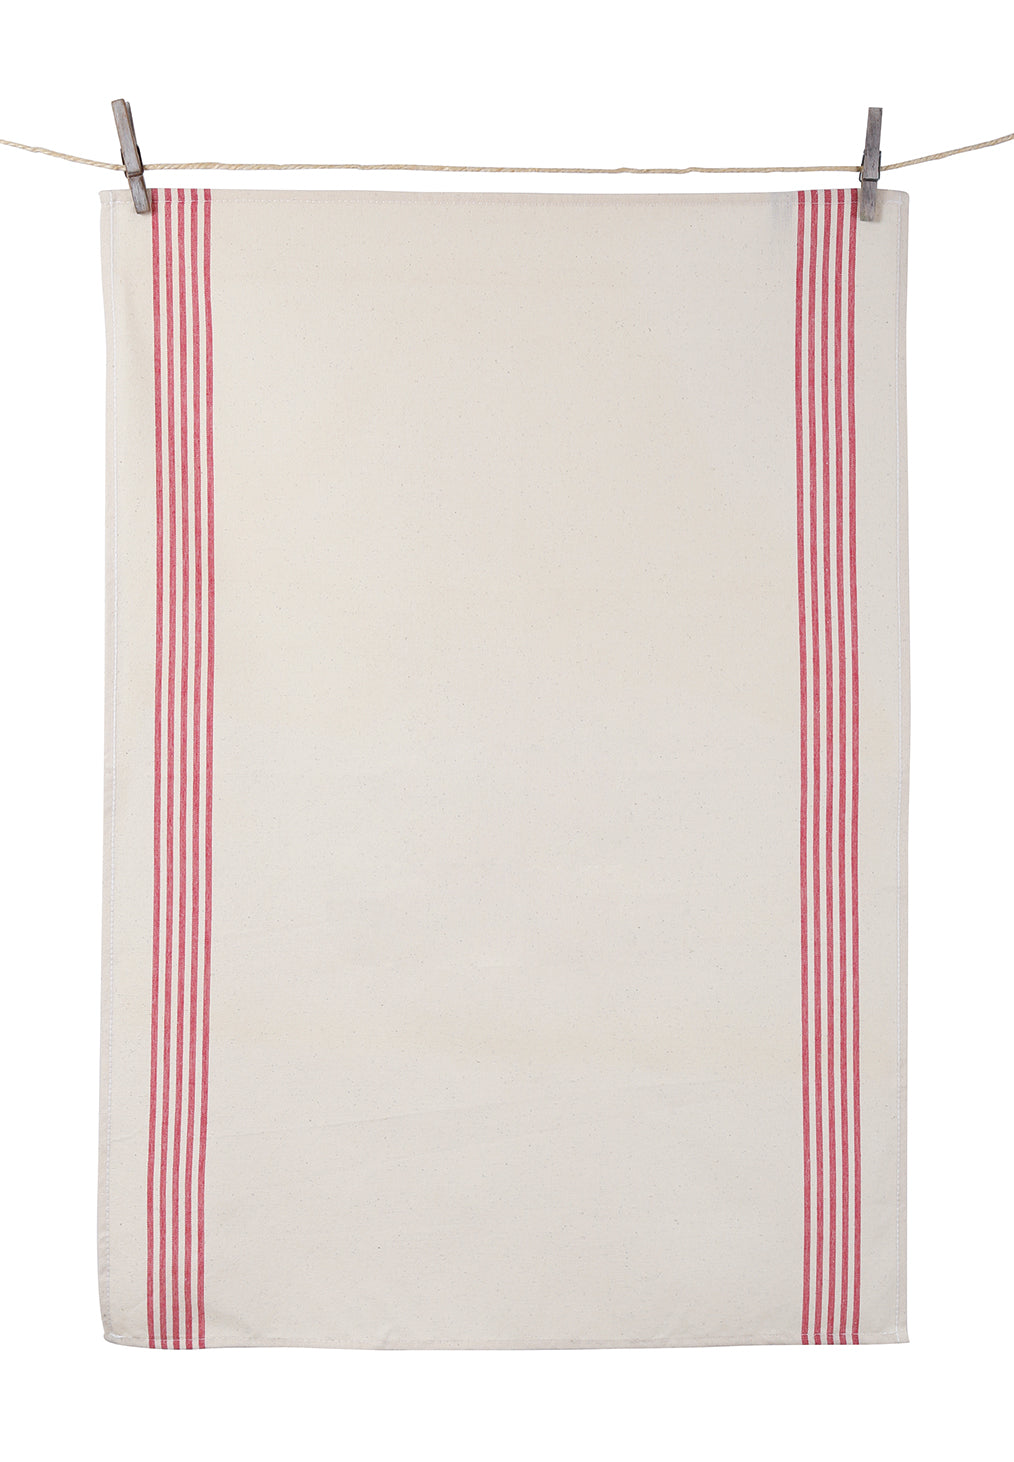 Tissage de L’Ouest Set of 2 Renzo Dish Towels Red (21.6” x 31.4”) Textile Tissage de L’Ouest Brand_Tissage de L’Ouest CLEAN OUT SALE Dish Towels Textiles_Towels & Napkins renzo-torchon-rouge-_2